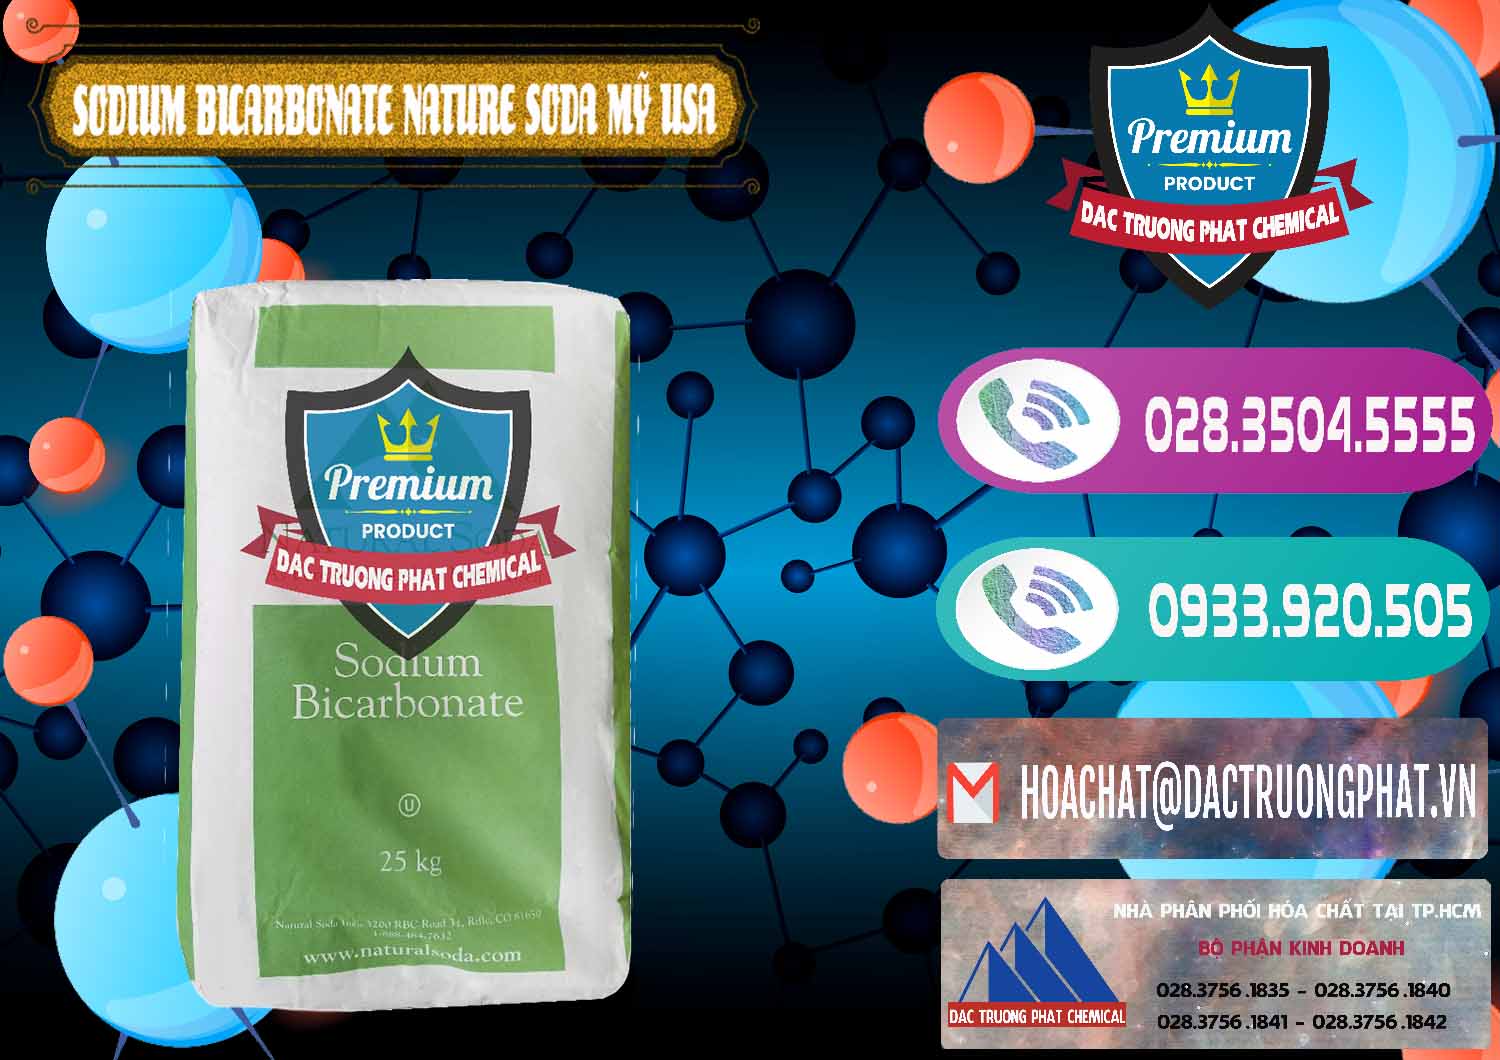 Cty bán và phân phối Sodium Bicarbonate – Bicar NaHCO3 Food Grade Nature Soda Mỹ USA - 0256 - Nhập khẩu & cung cấp hóa chất tại TP.HCM - hoachatxulynuoc.com